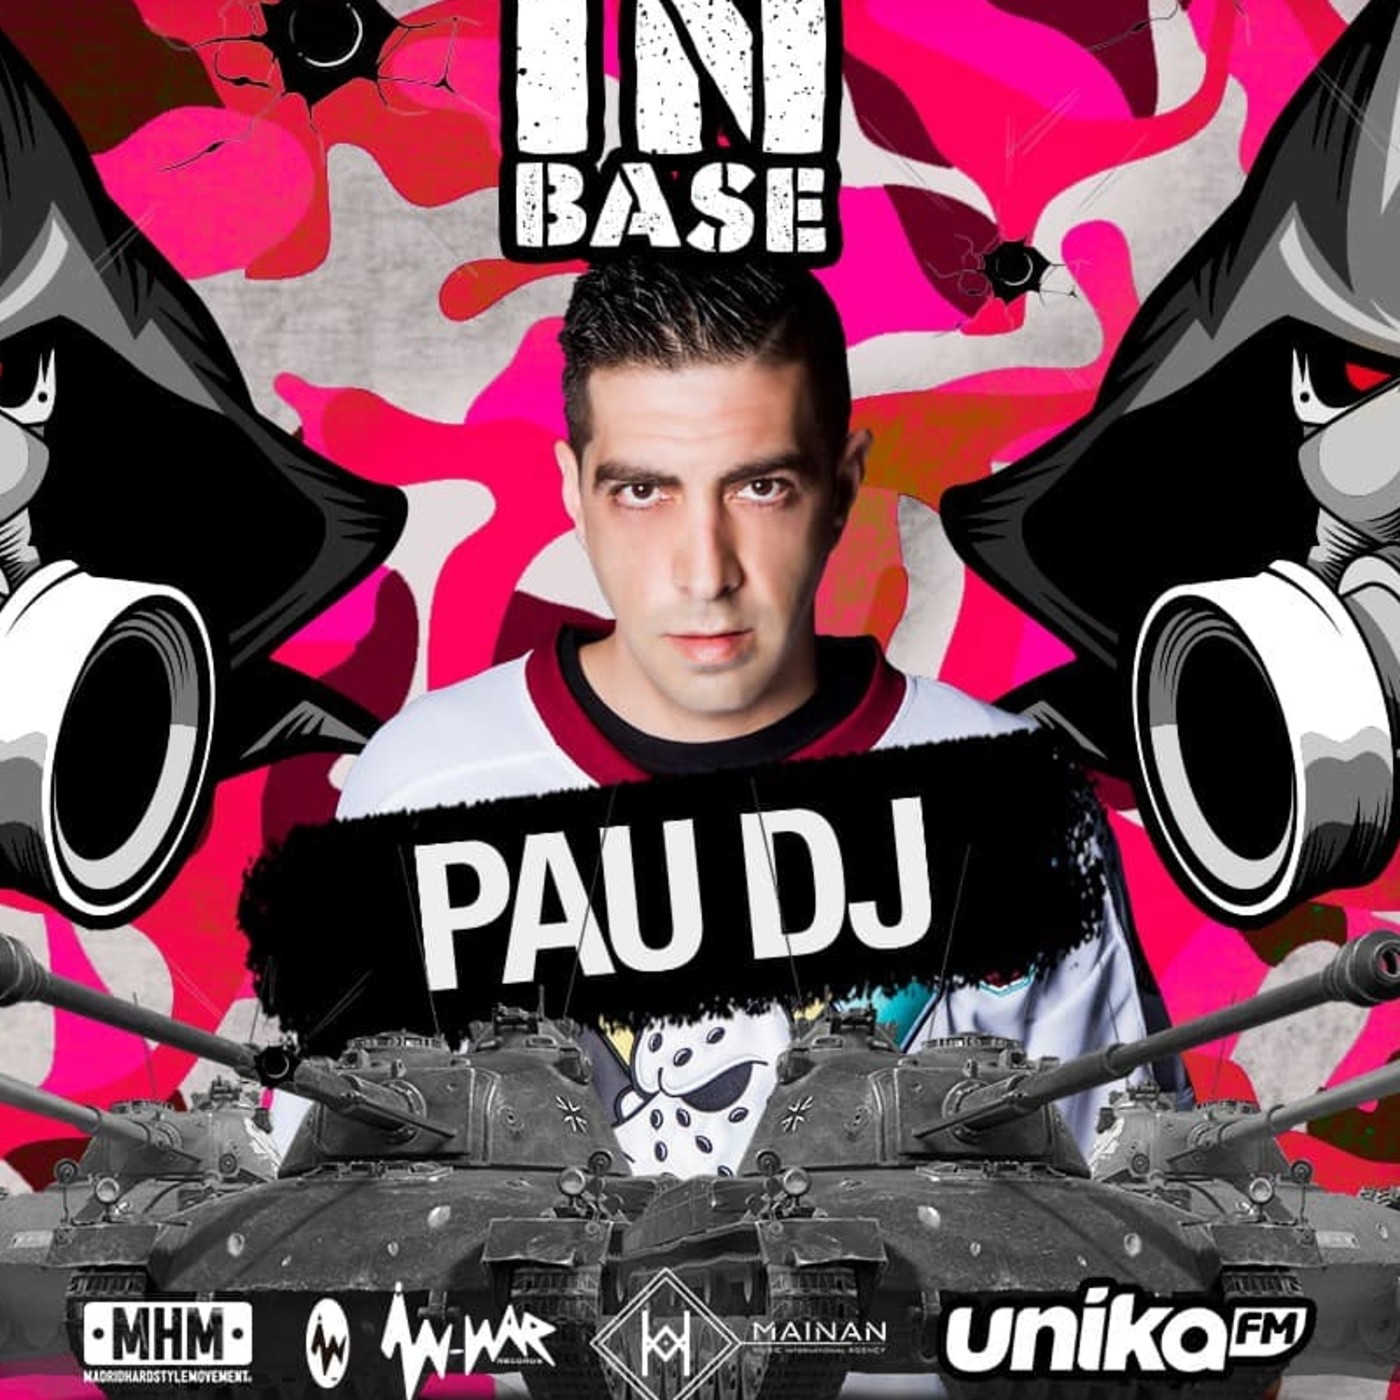 EPISODIO 93 INBASE FESTIVAL Pau DJ Unika FM 3-5-20